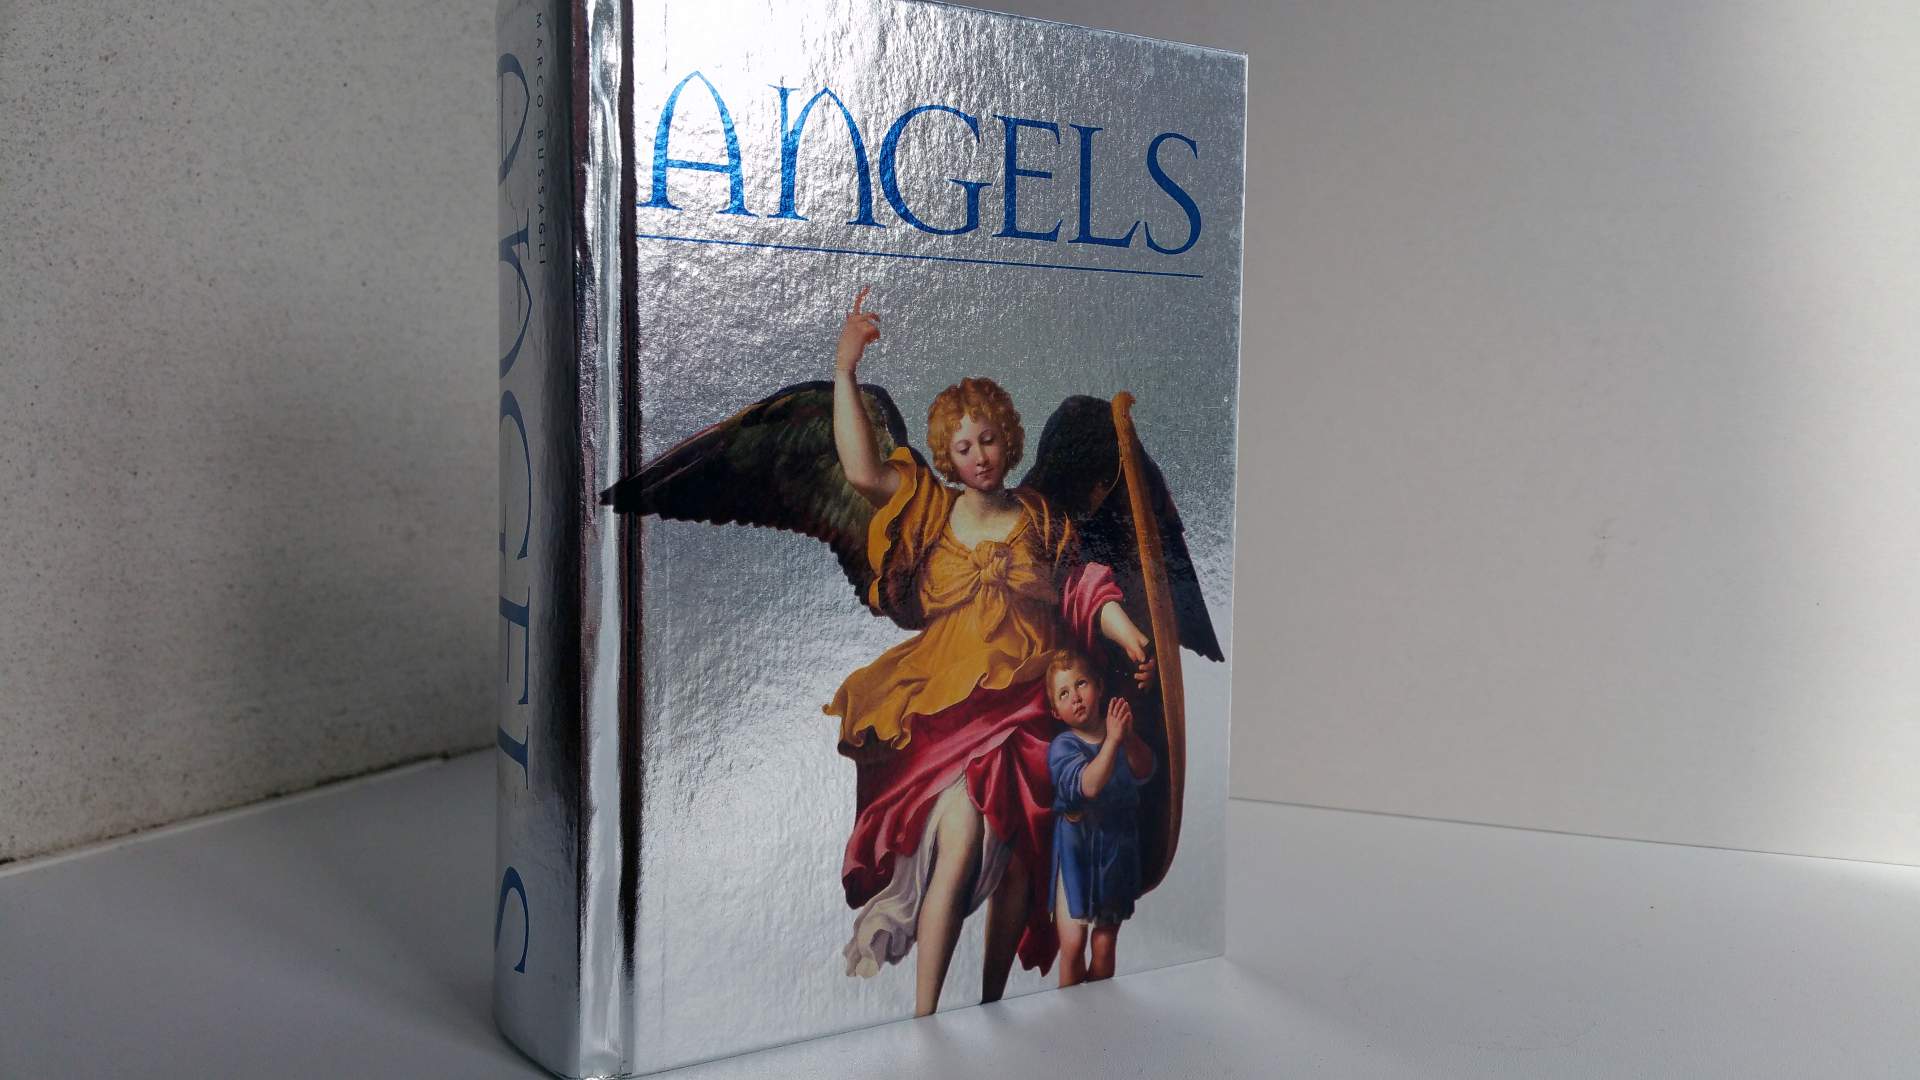 Andělé (Angels) – Marco Bussagli